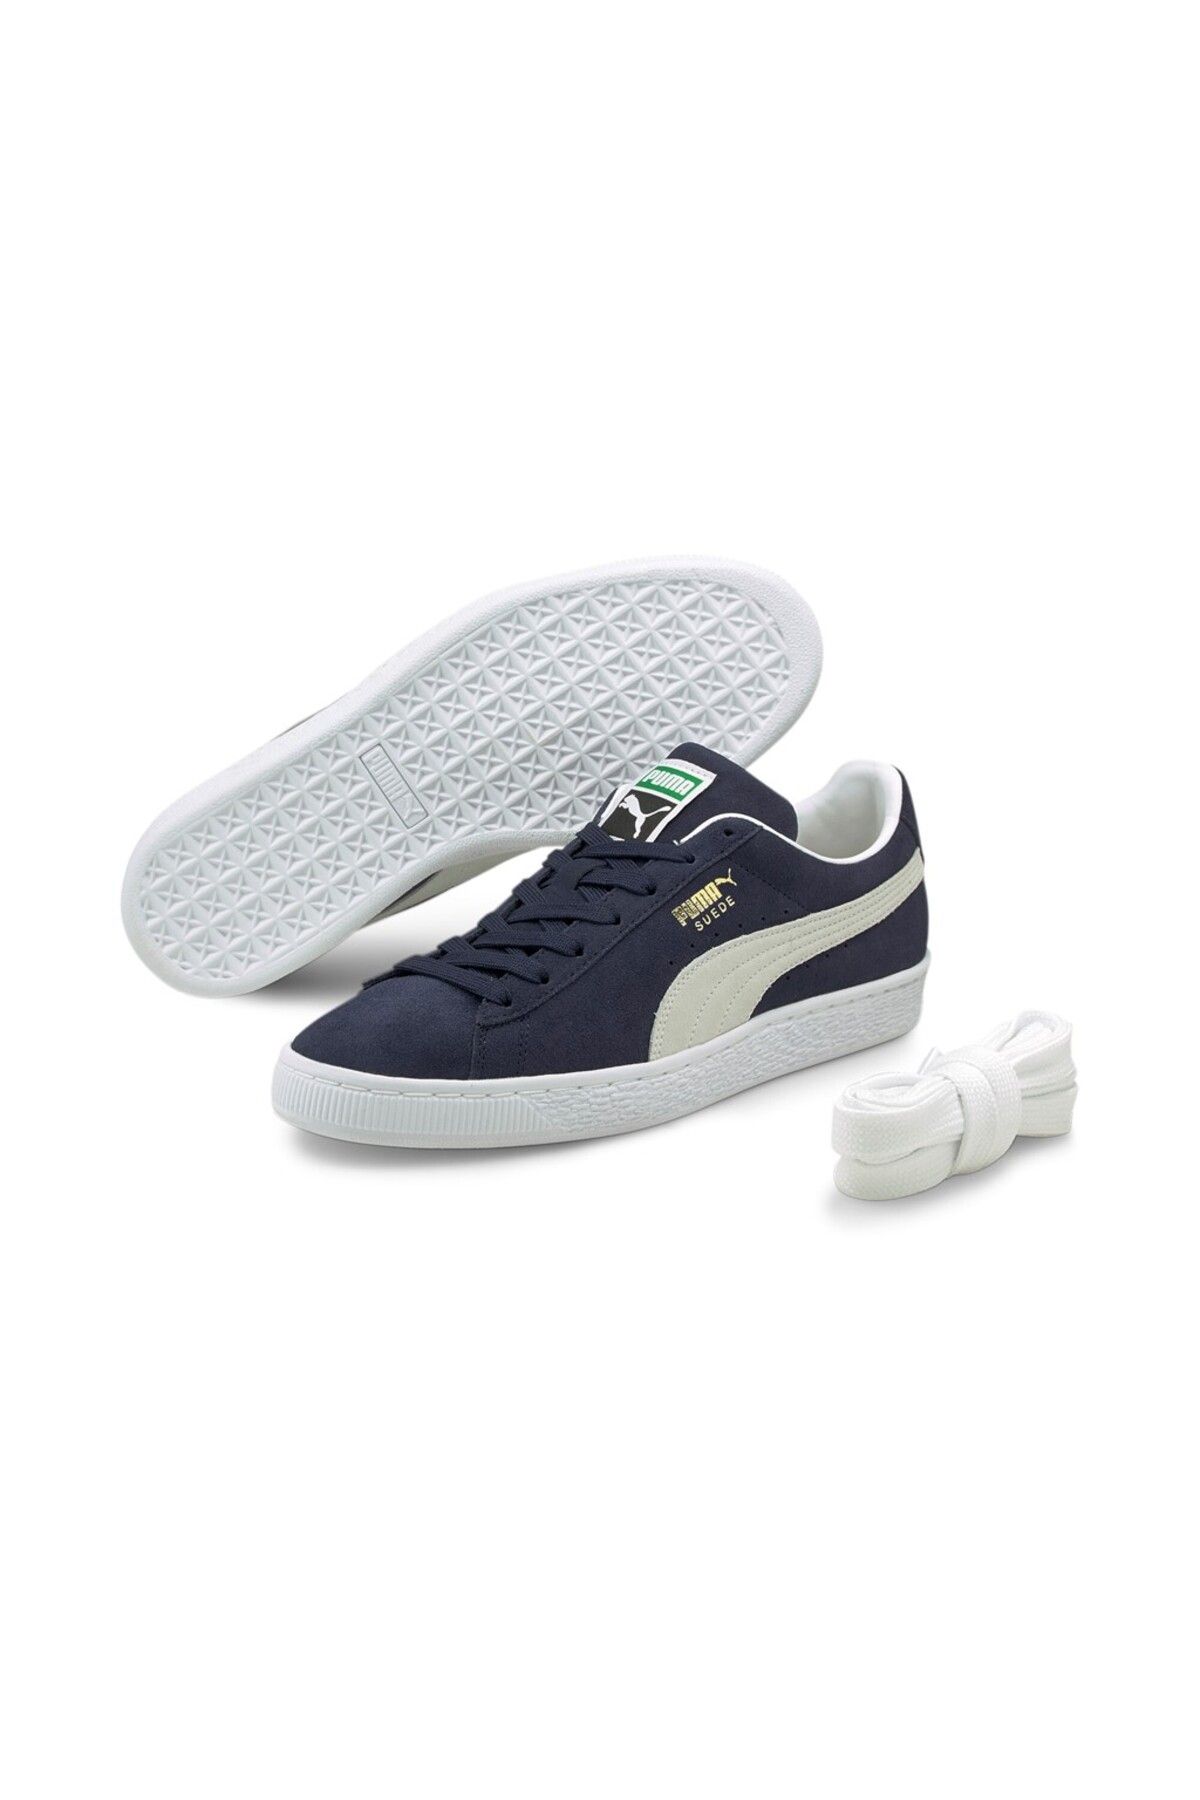 Puma Suede Classic Xxı Erkek Mavi Sneaker Ayakkabı 37491504